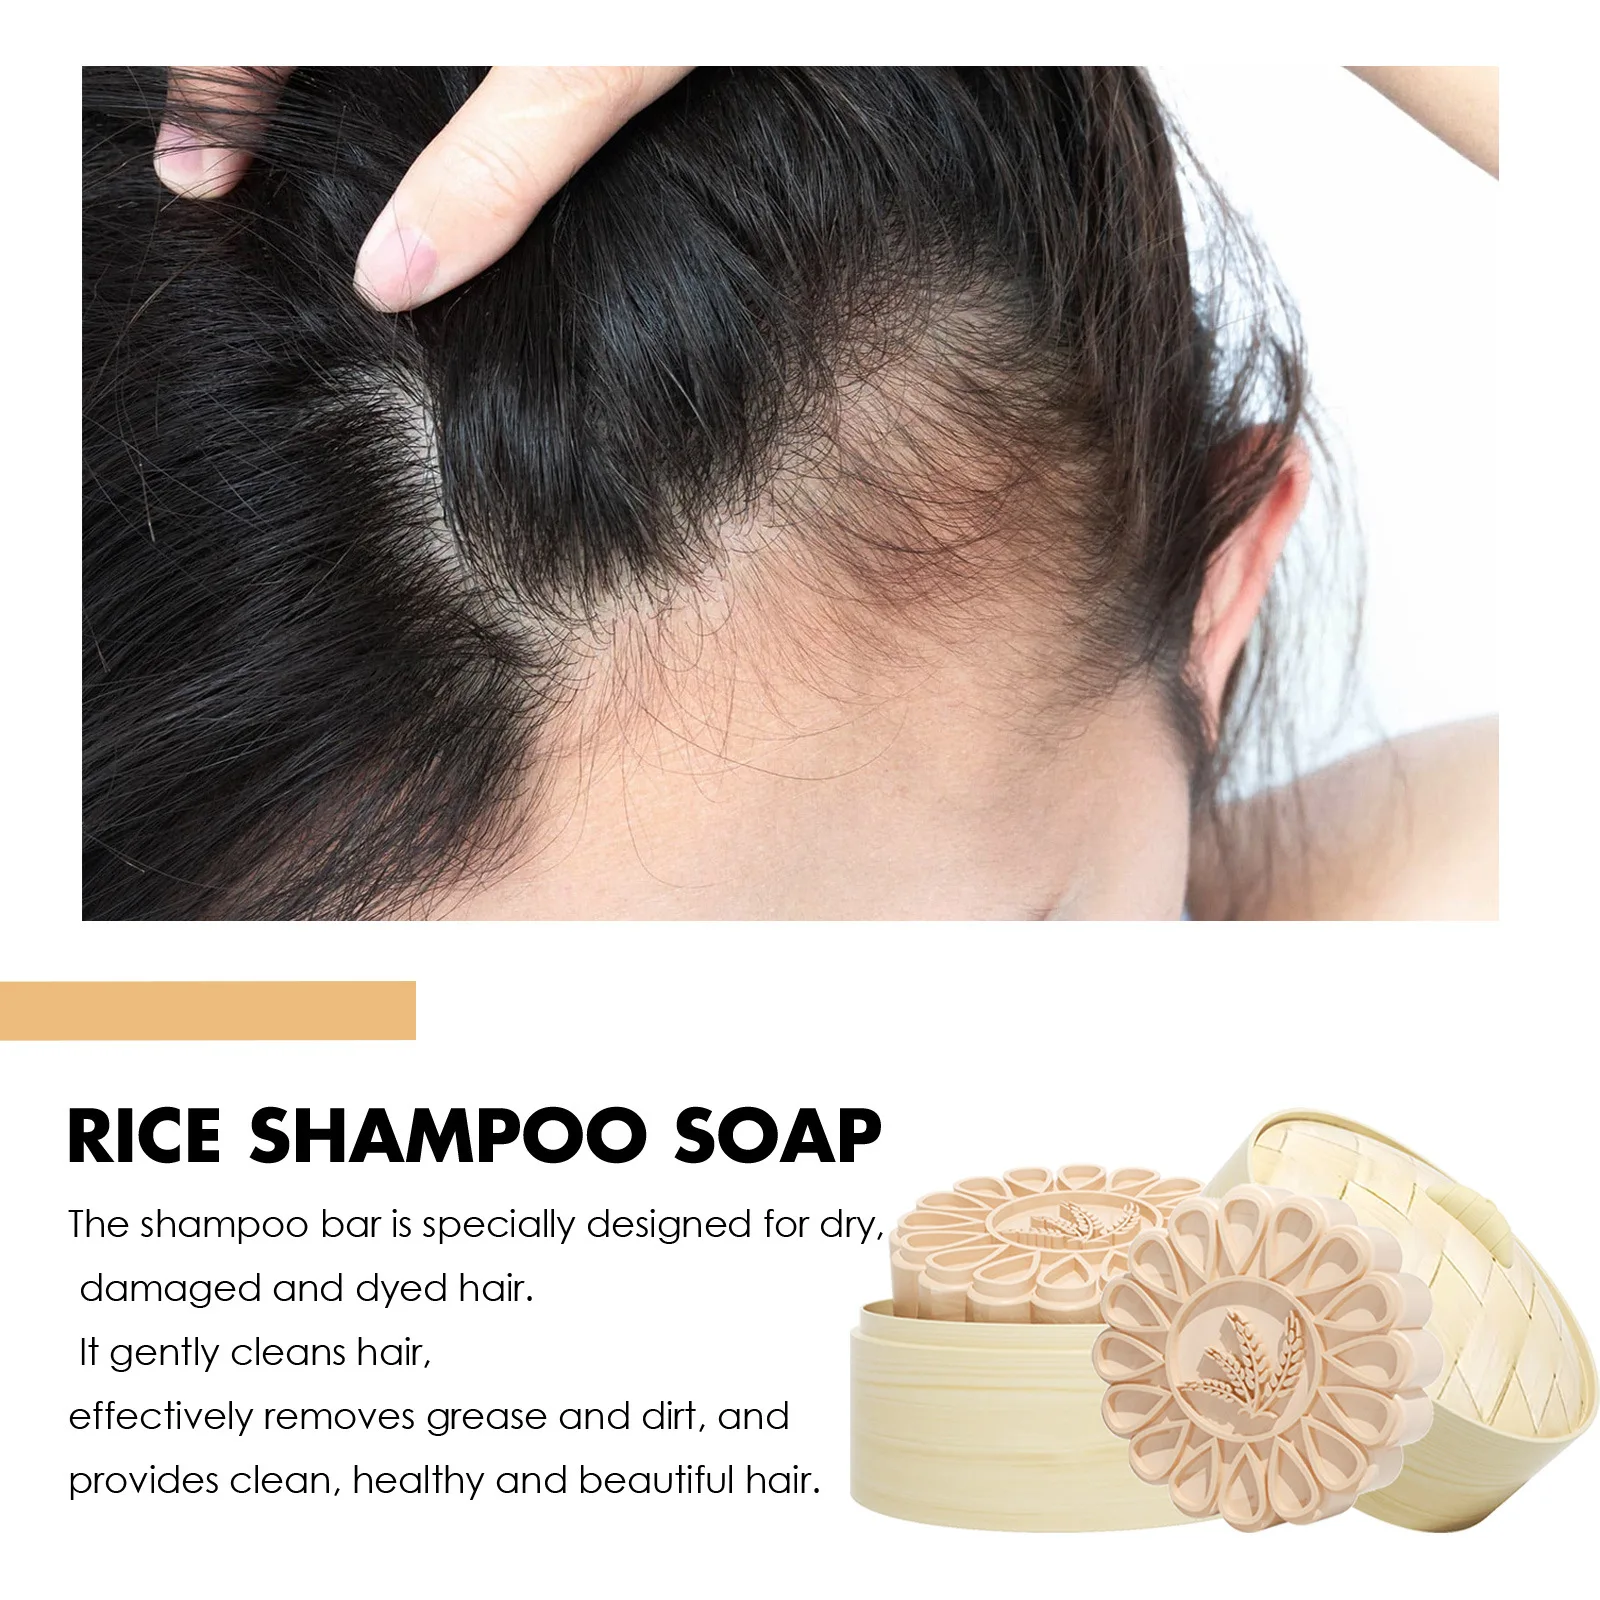 אורז נגד אובדן שמפו סבון להזין שיפור התקרחות לצמיחה מחודשת שיער הסרת קשקשים לחות השיער שמפו טיפולי - 4